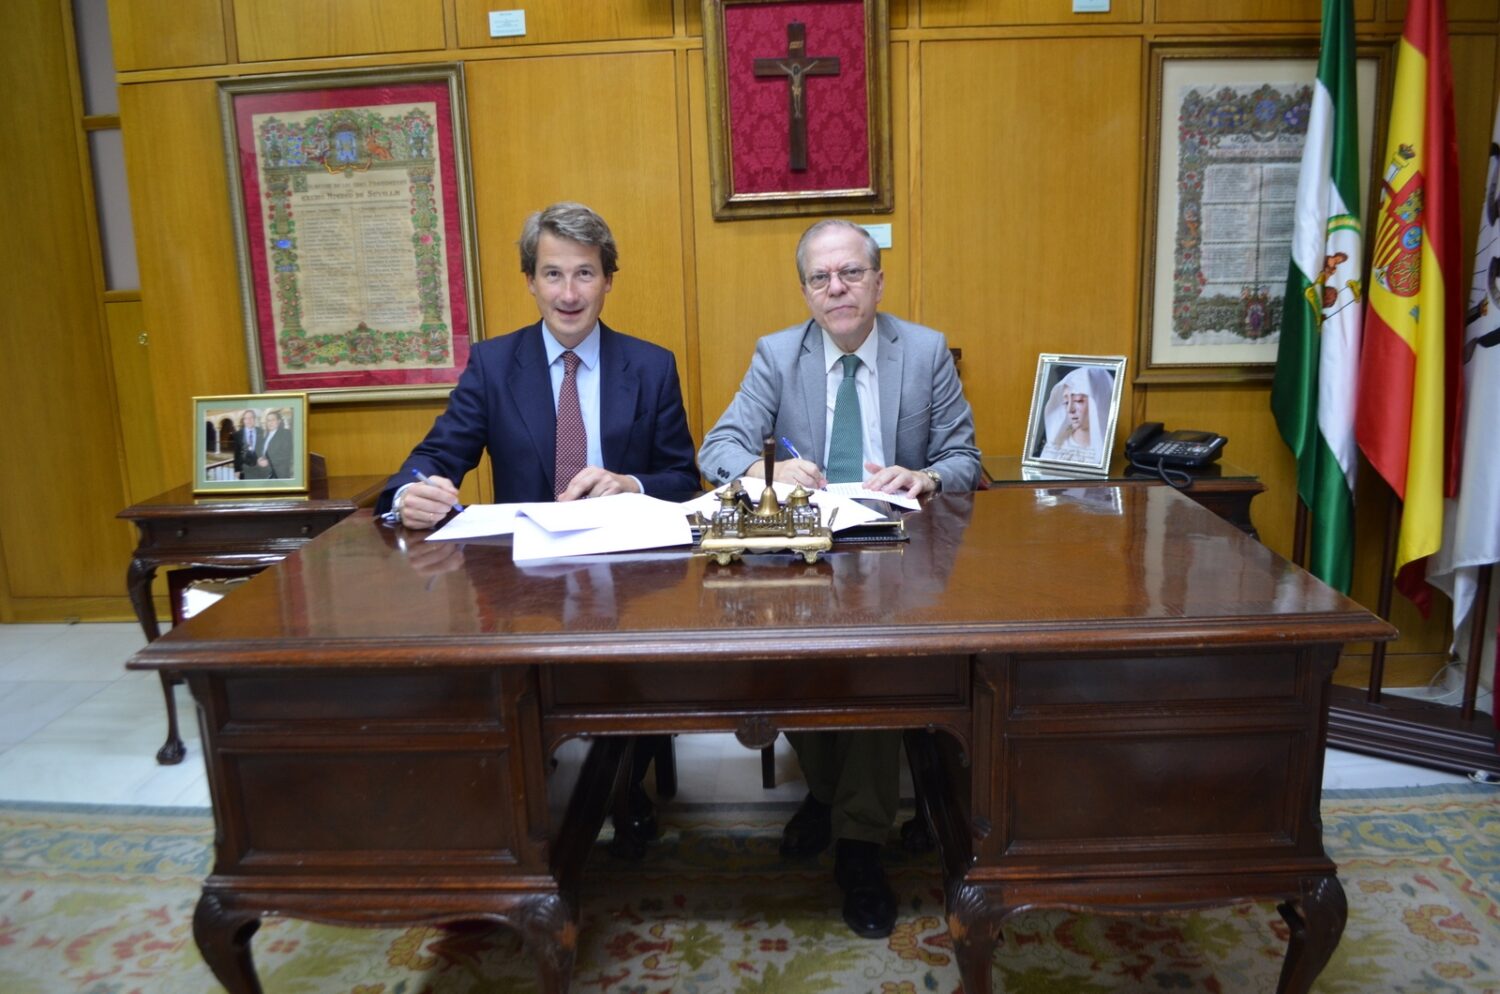  El presidente del Ateneo, Alberto Máximo Pérez Calero, y Director de la Fundación Caser, Juan Sitges, en la firma del acuerdo